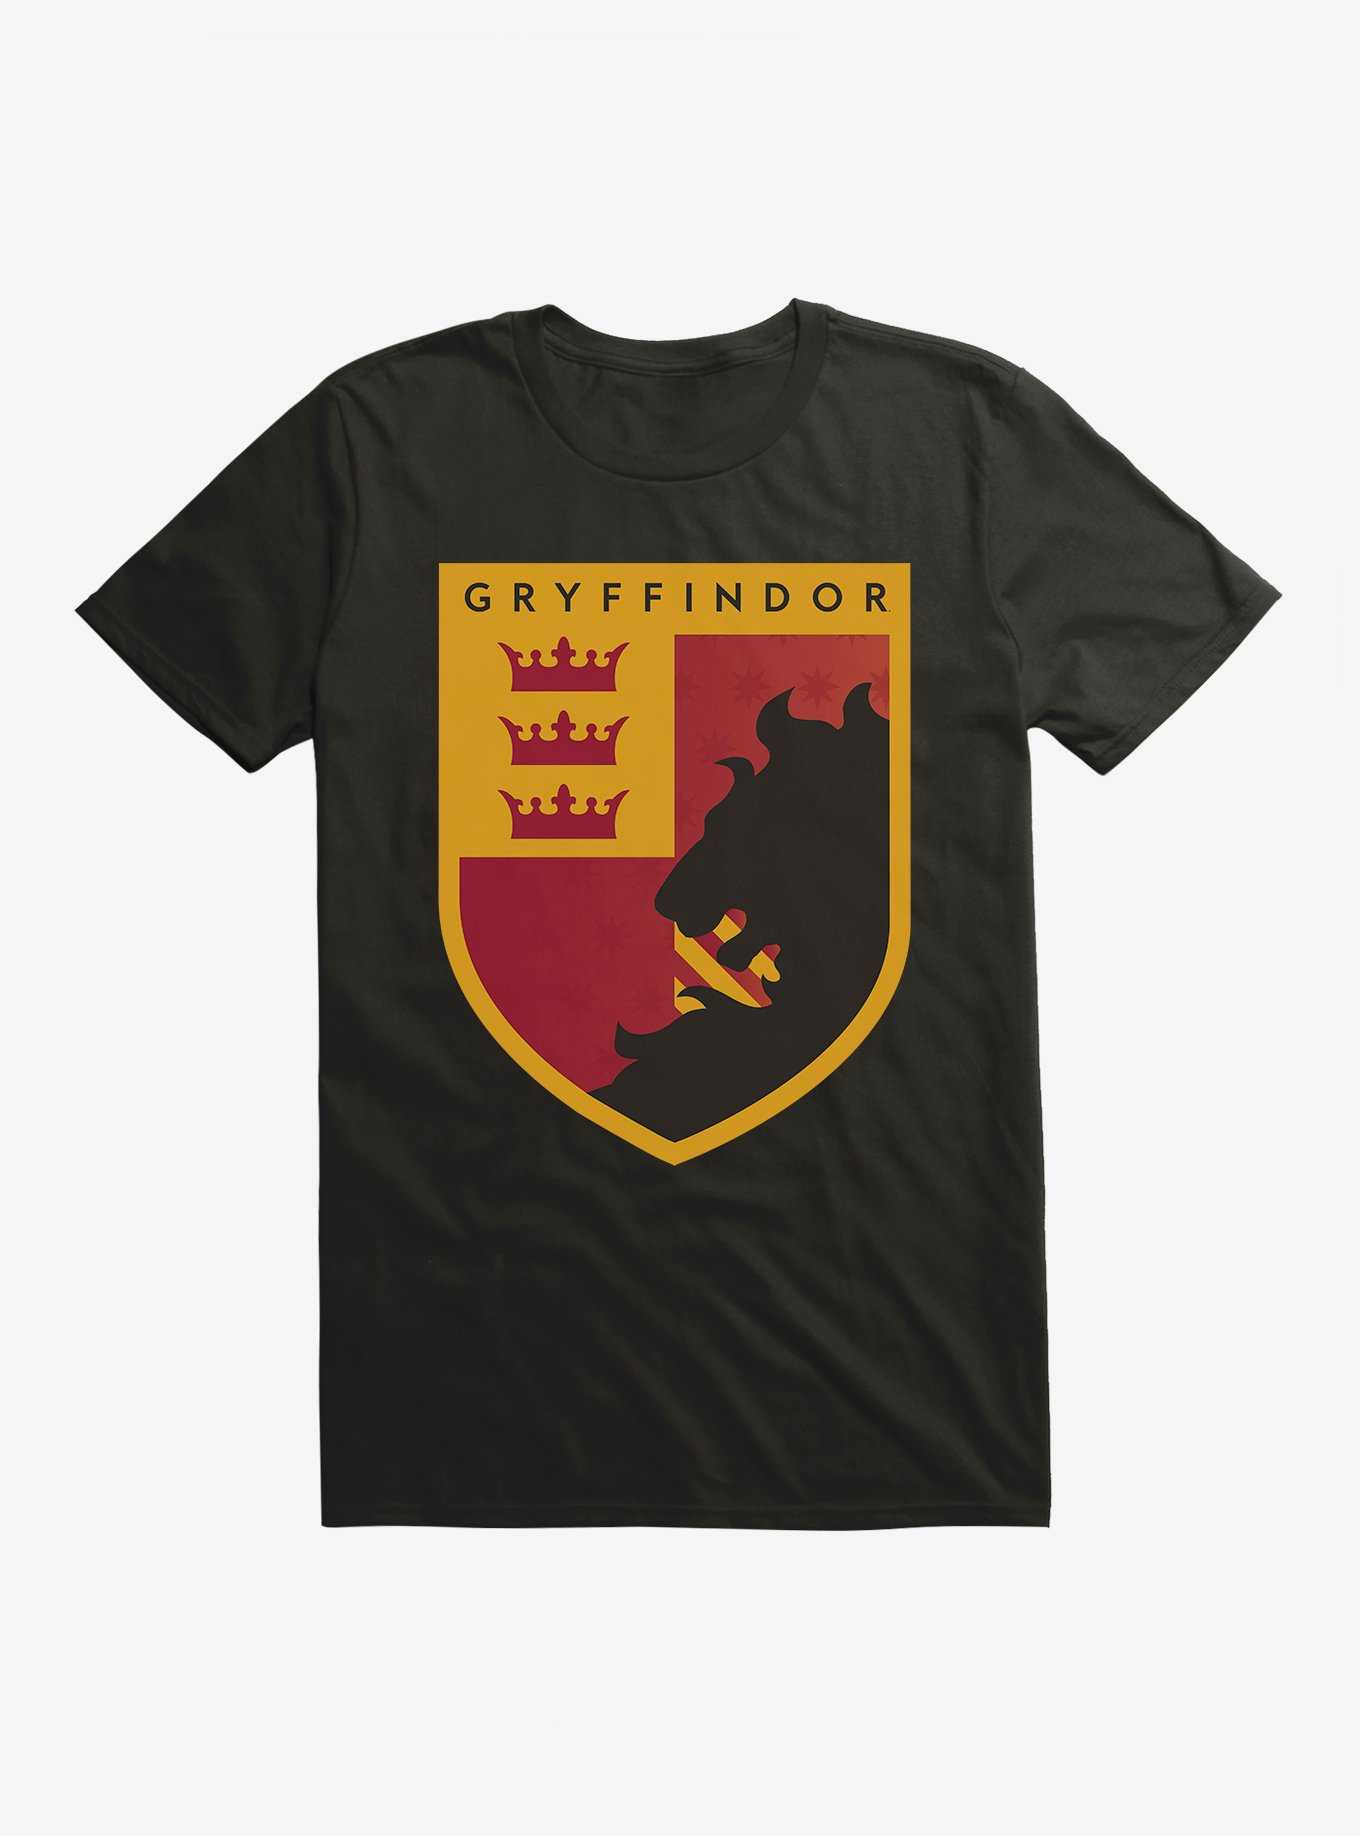 Harry Potter Gryffindor Triple Crown Crest T-Shirt, , hi-res